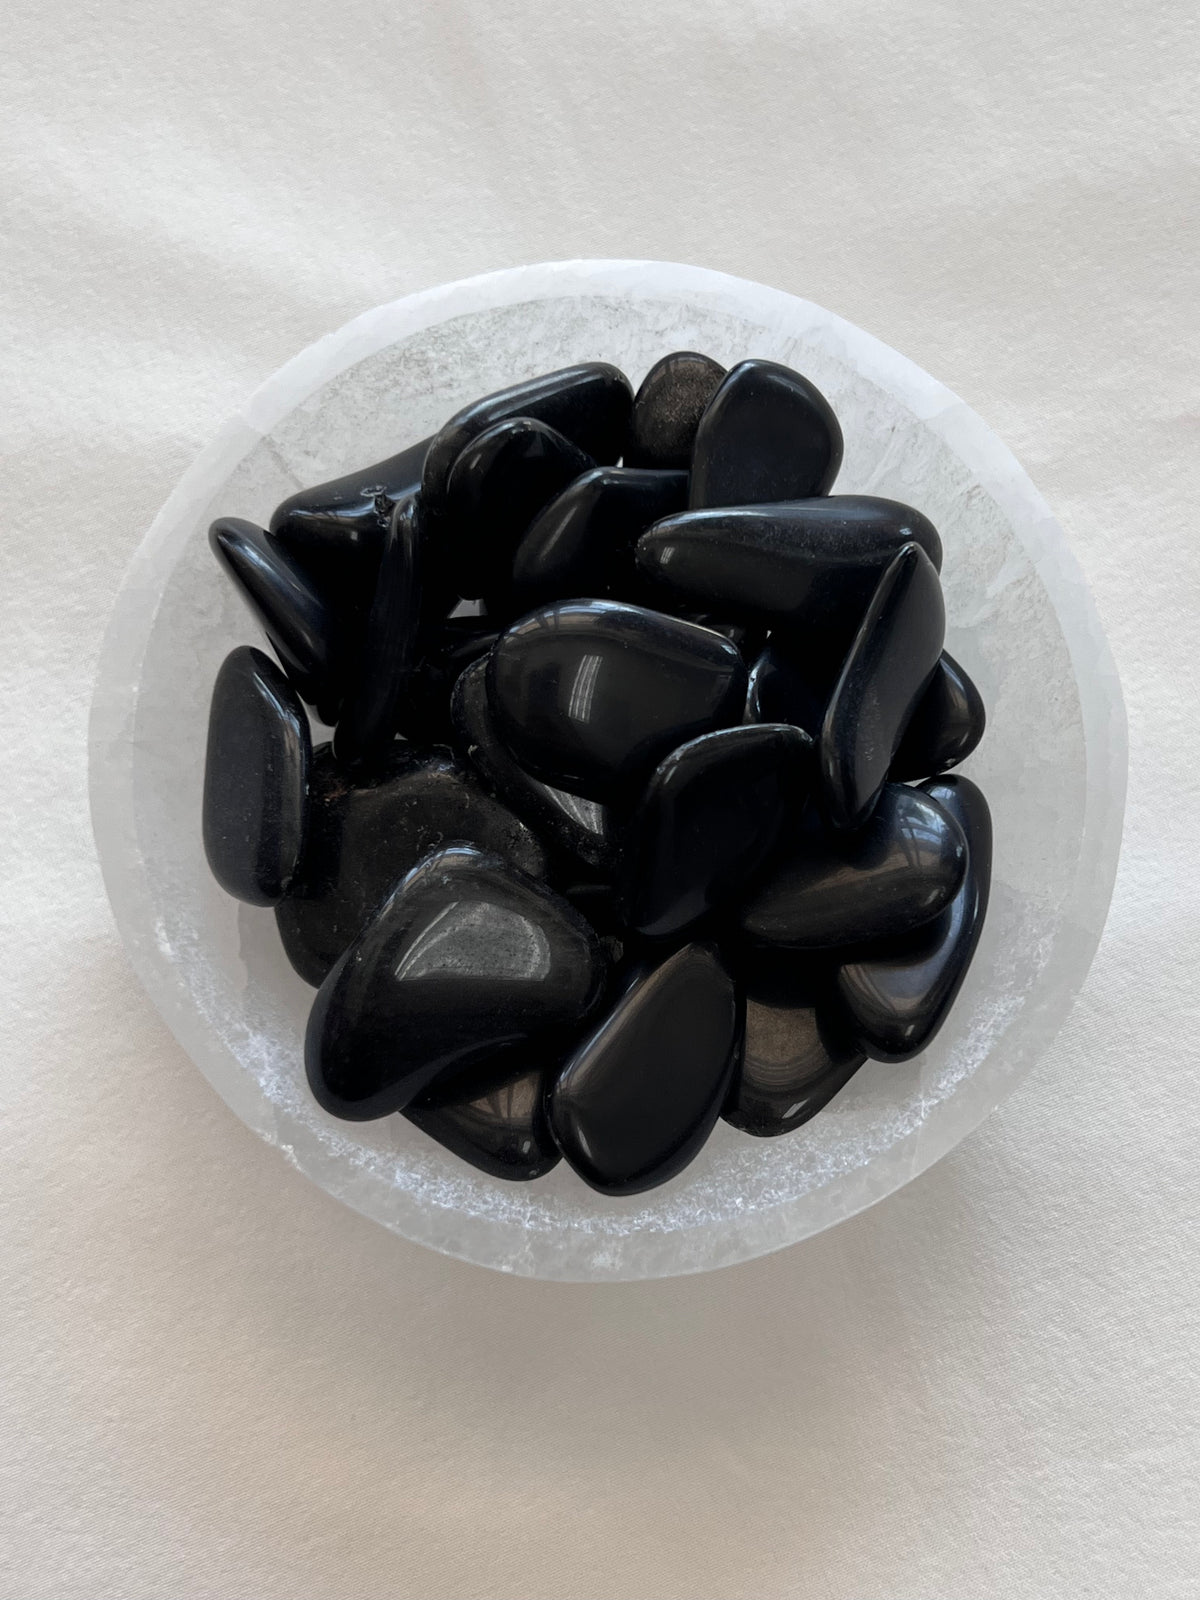 Obsidian Tumbled